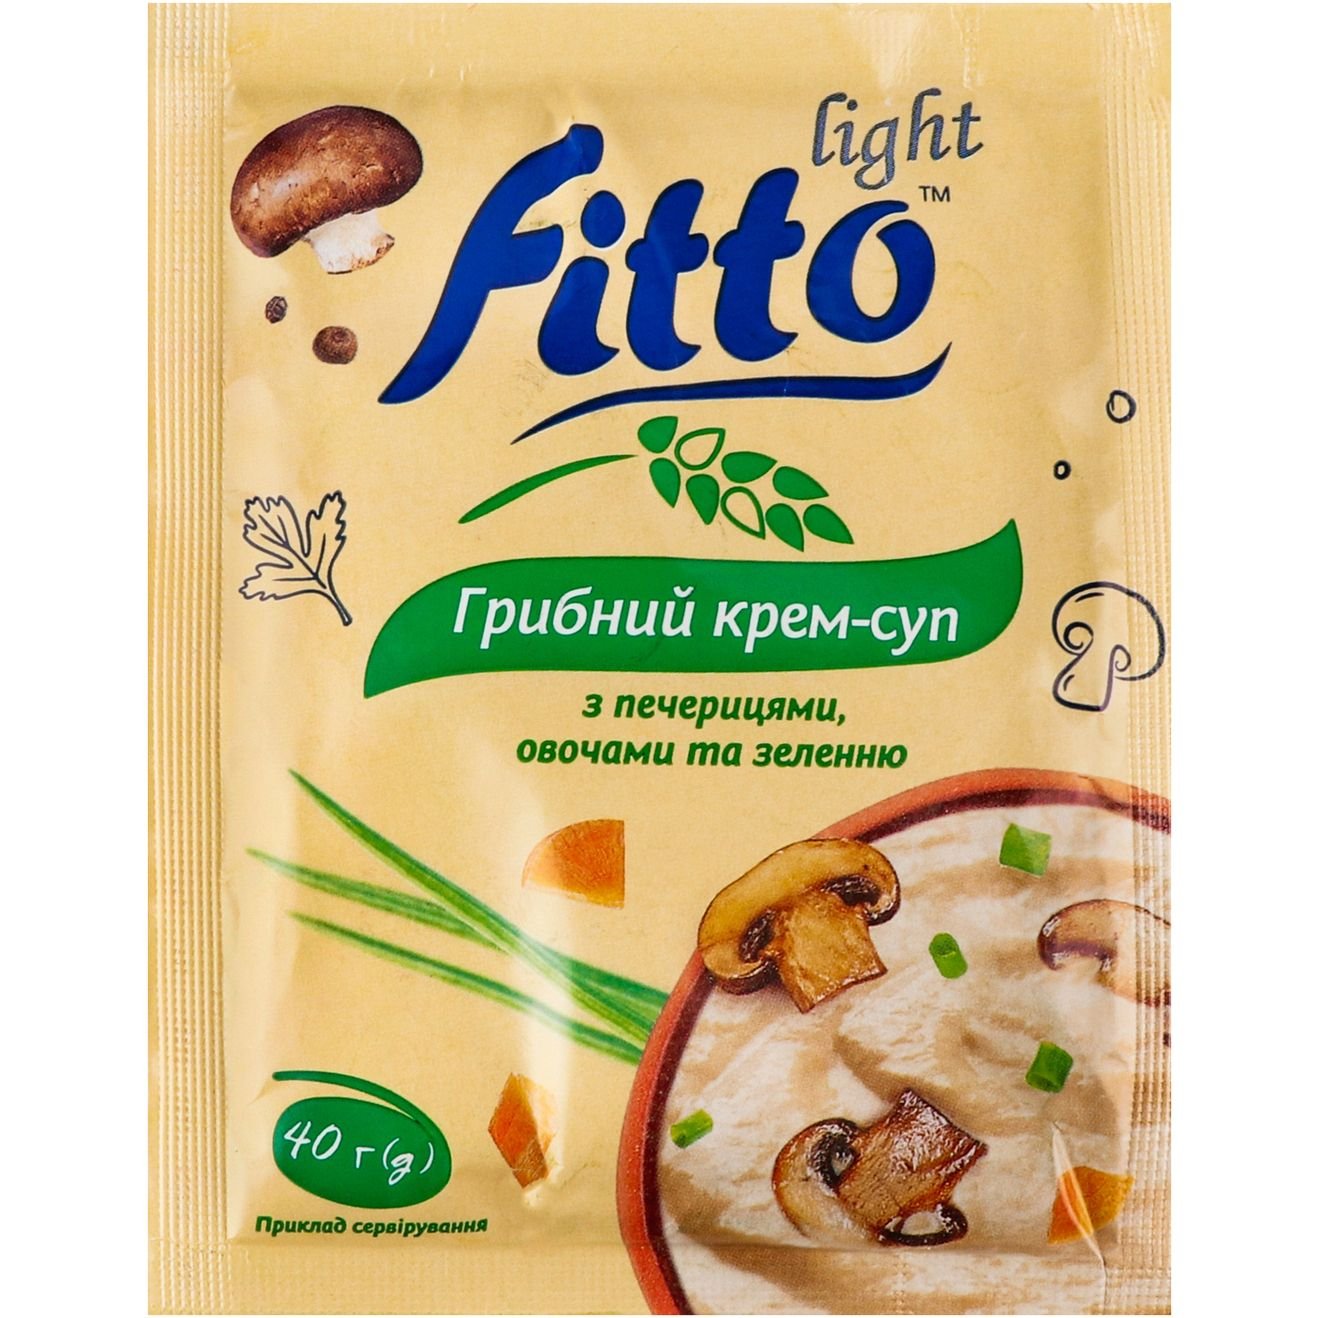 Крем-суп Fitto light Грибной с овощами 40 г (915338) - фото 1